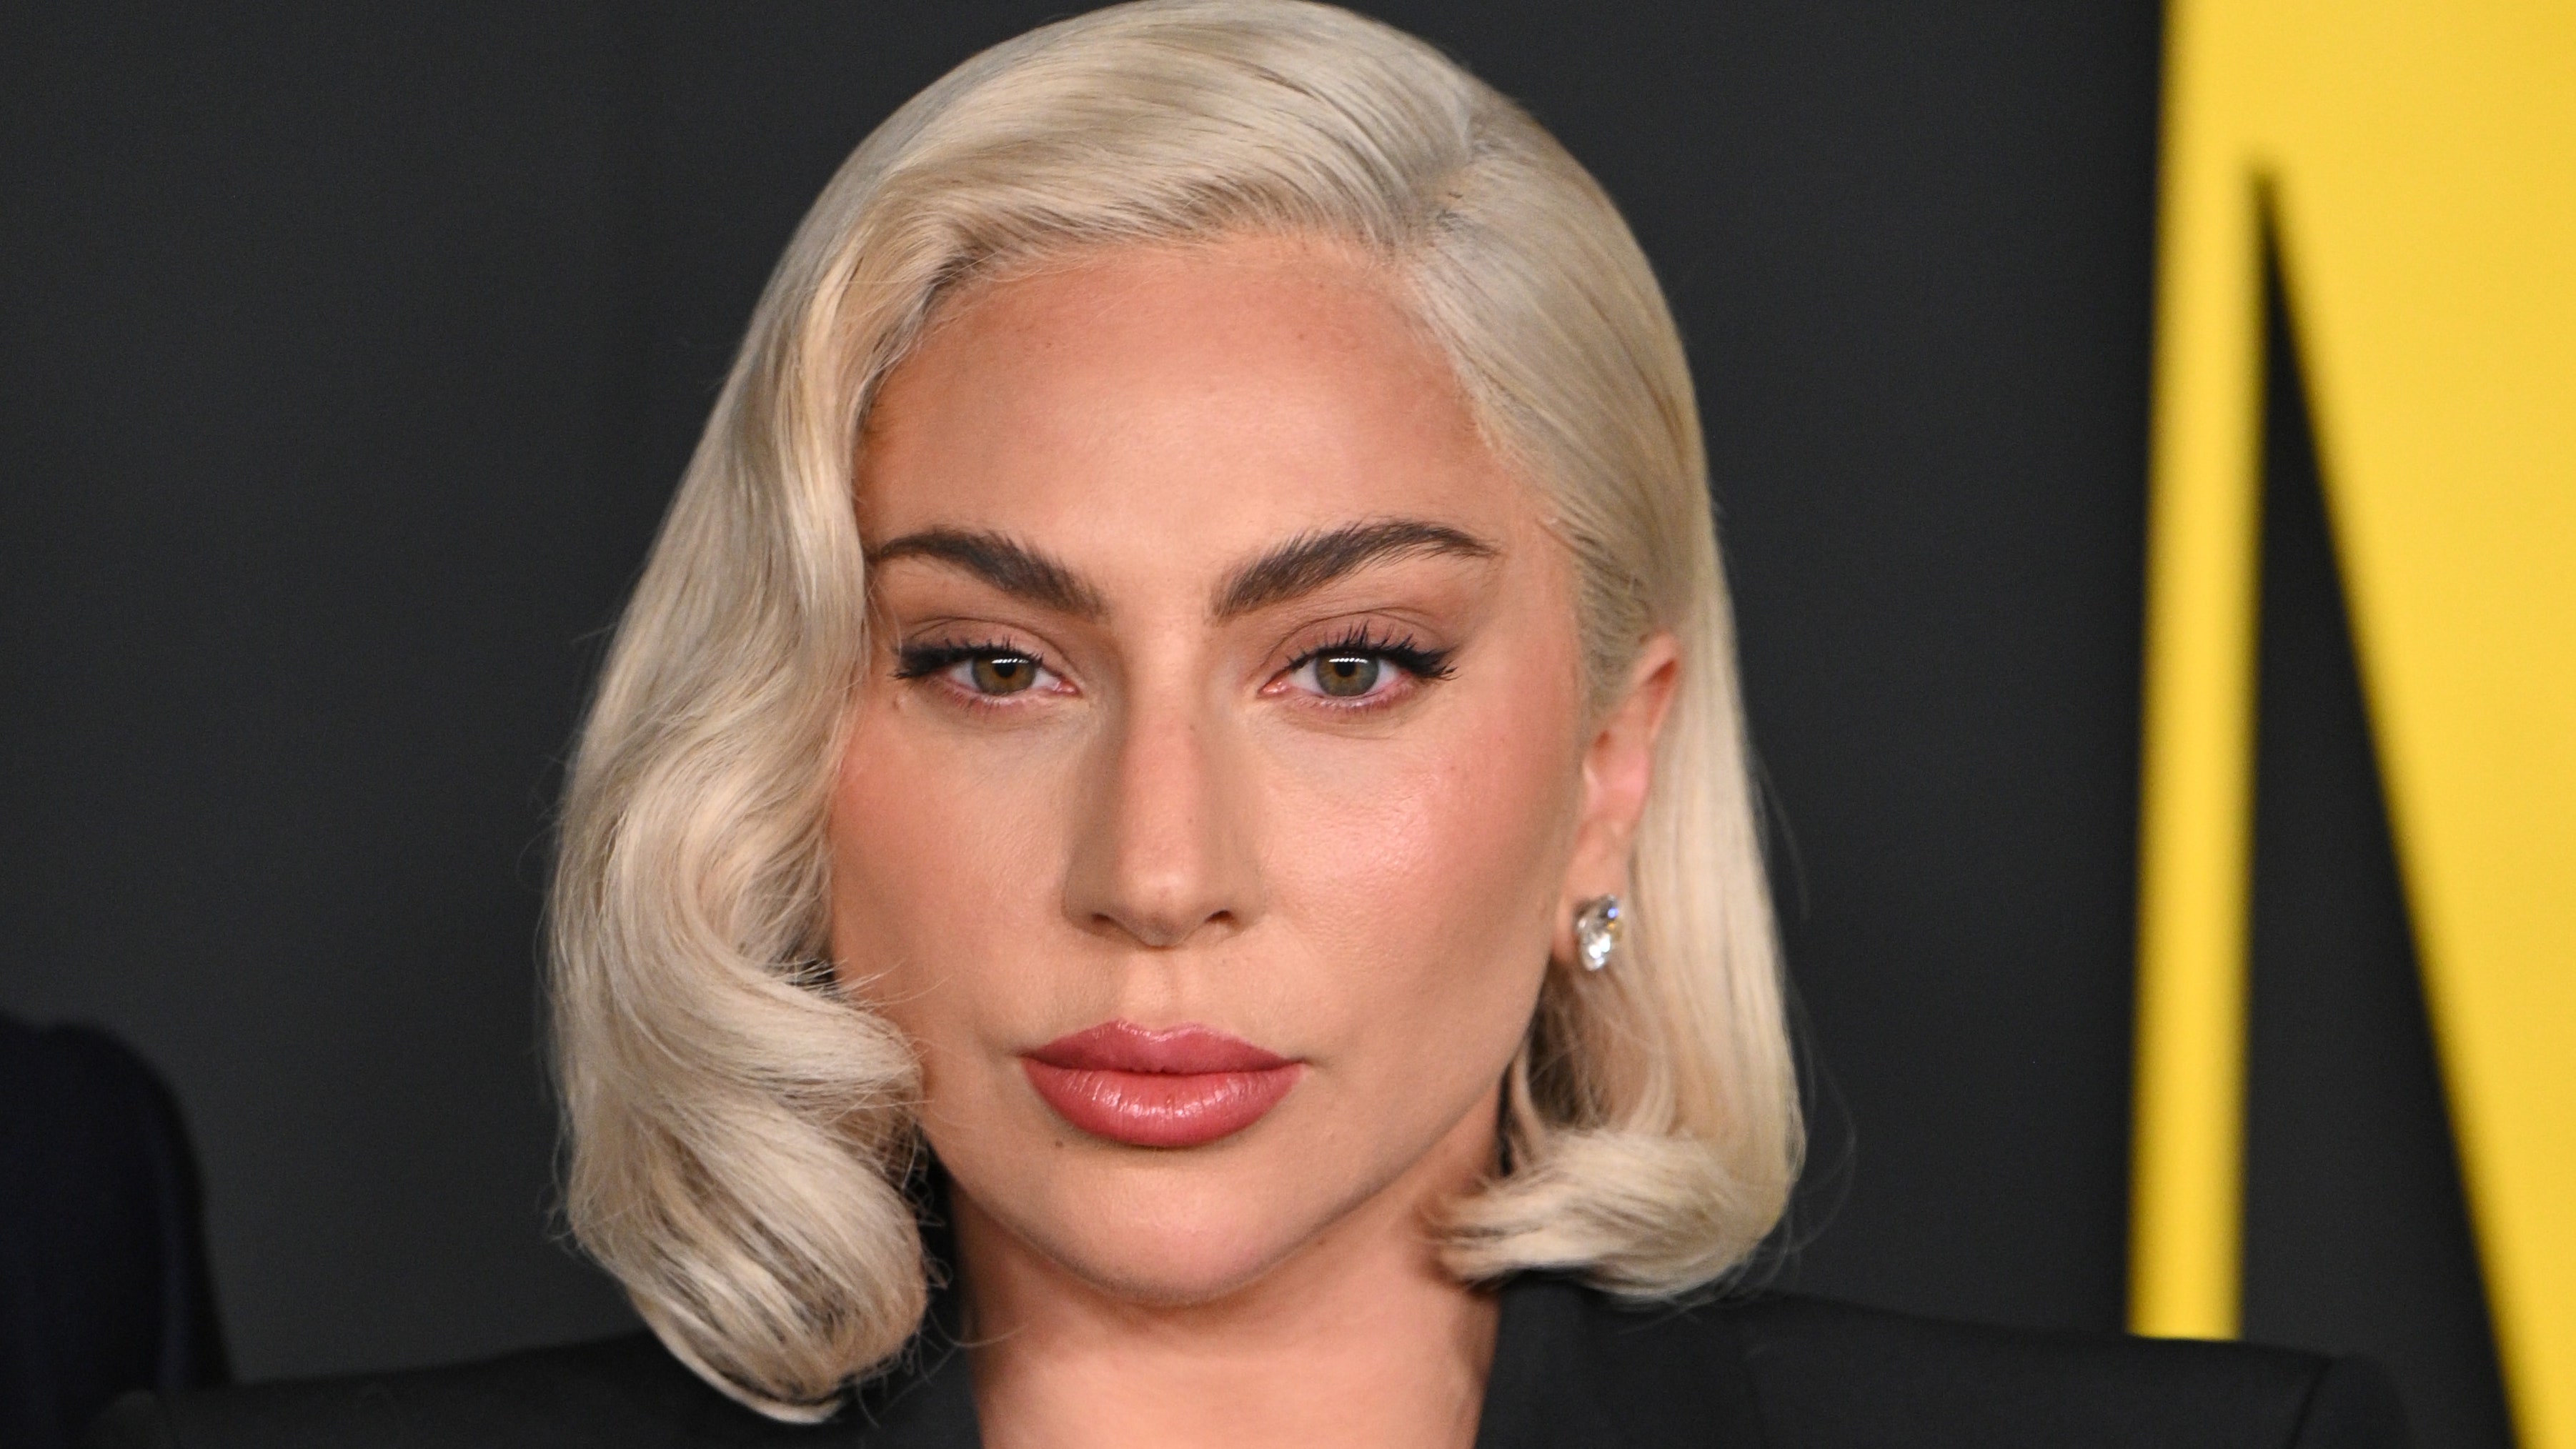 El flequillo negro azabache de Lady Gaga es una máquina del tiempo que nos devuelve a 2012